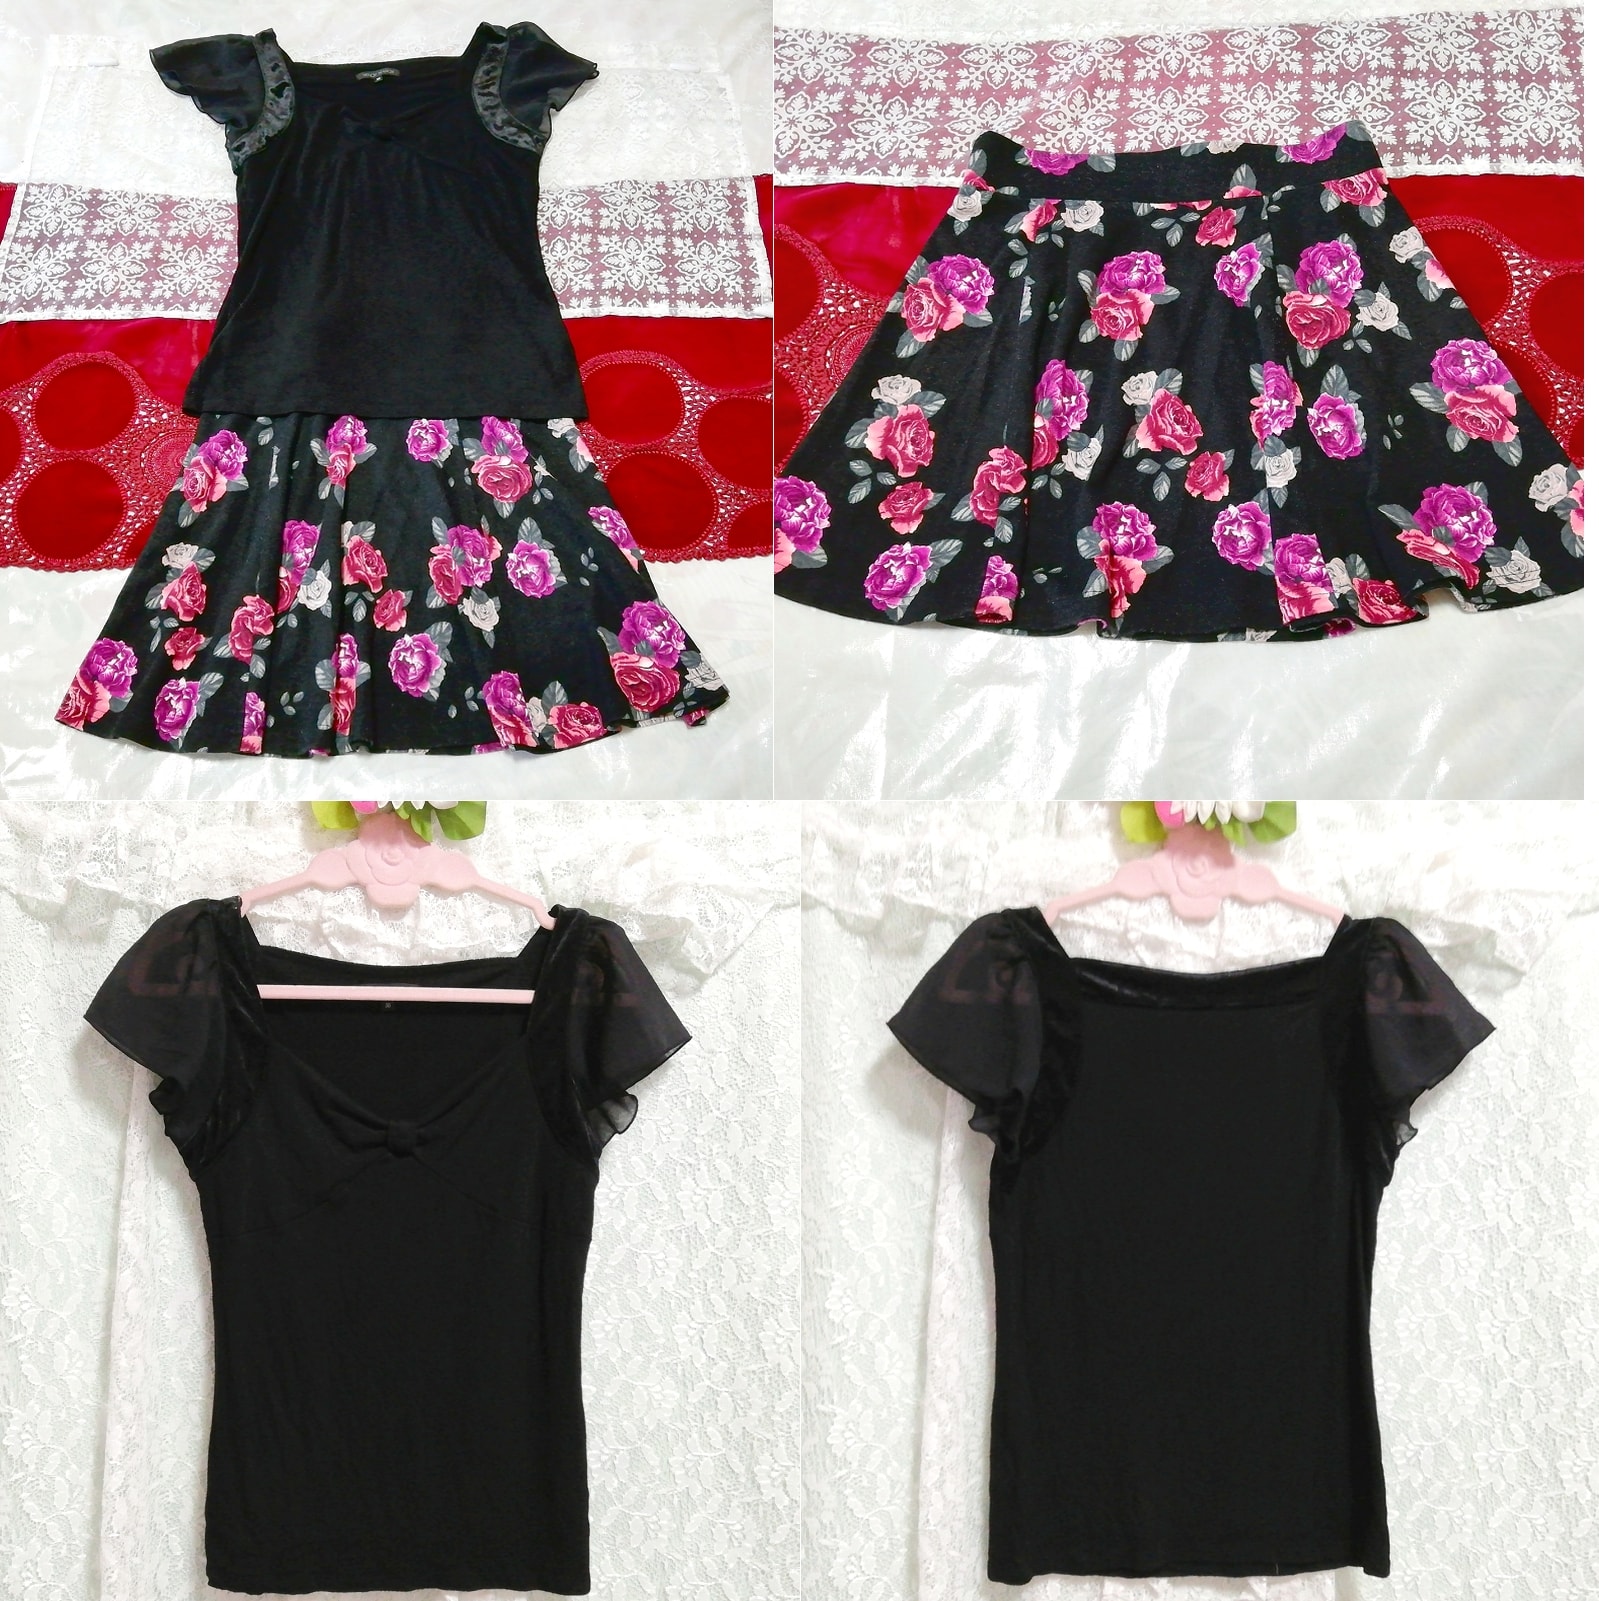 黑色剪裁缝制长袍睡衣黑玫瑰花卉图案迷你裙 2 件, 时尚, 女士时装, 睡衣